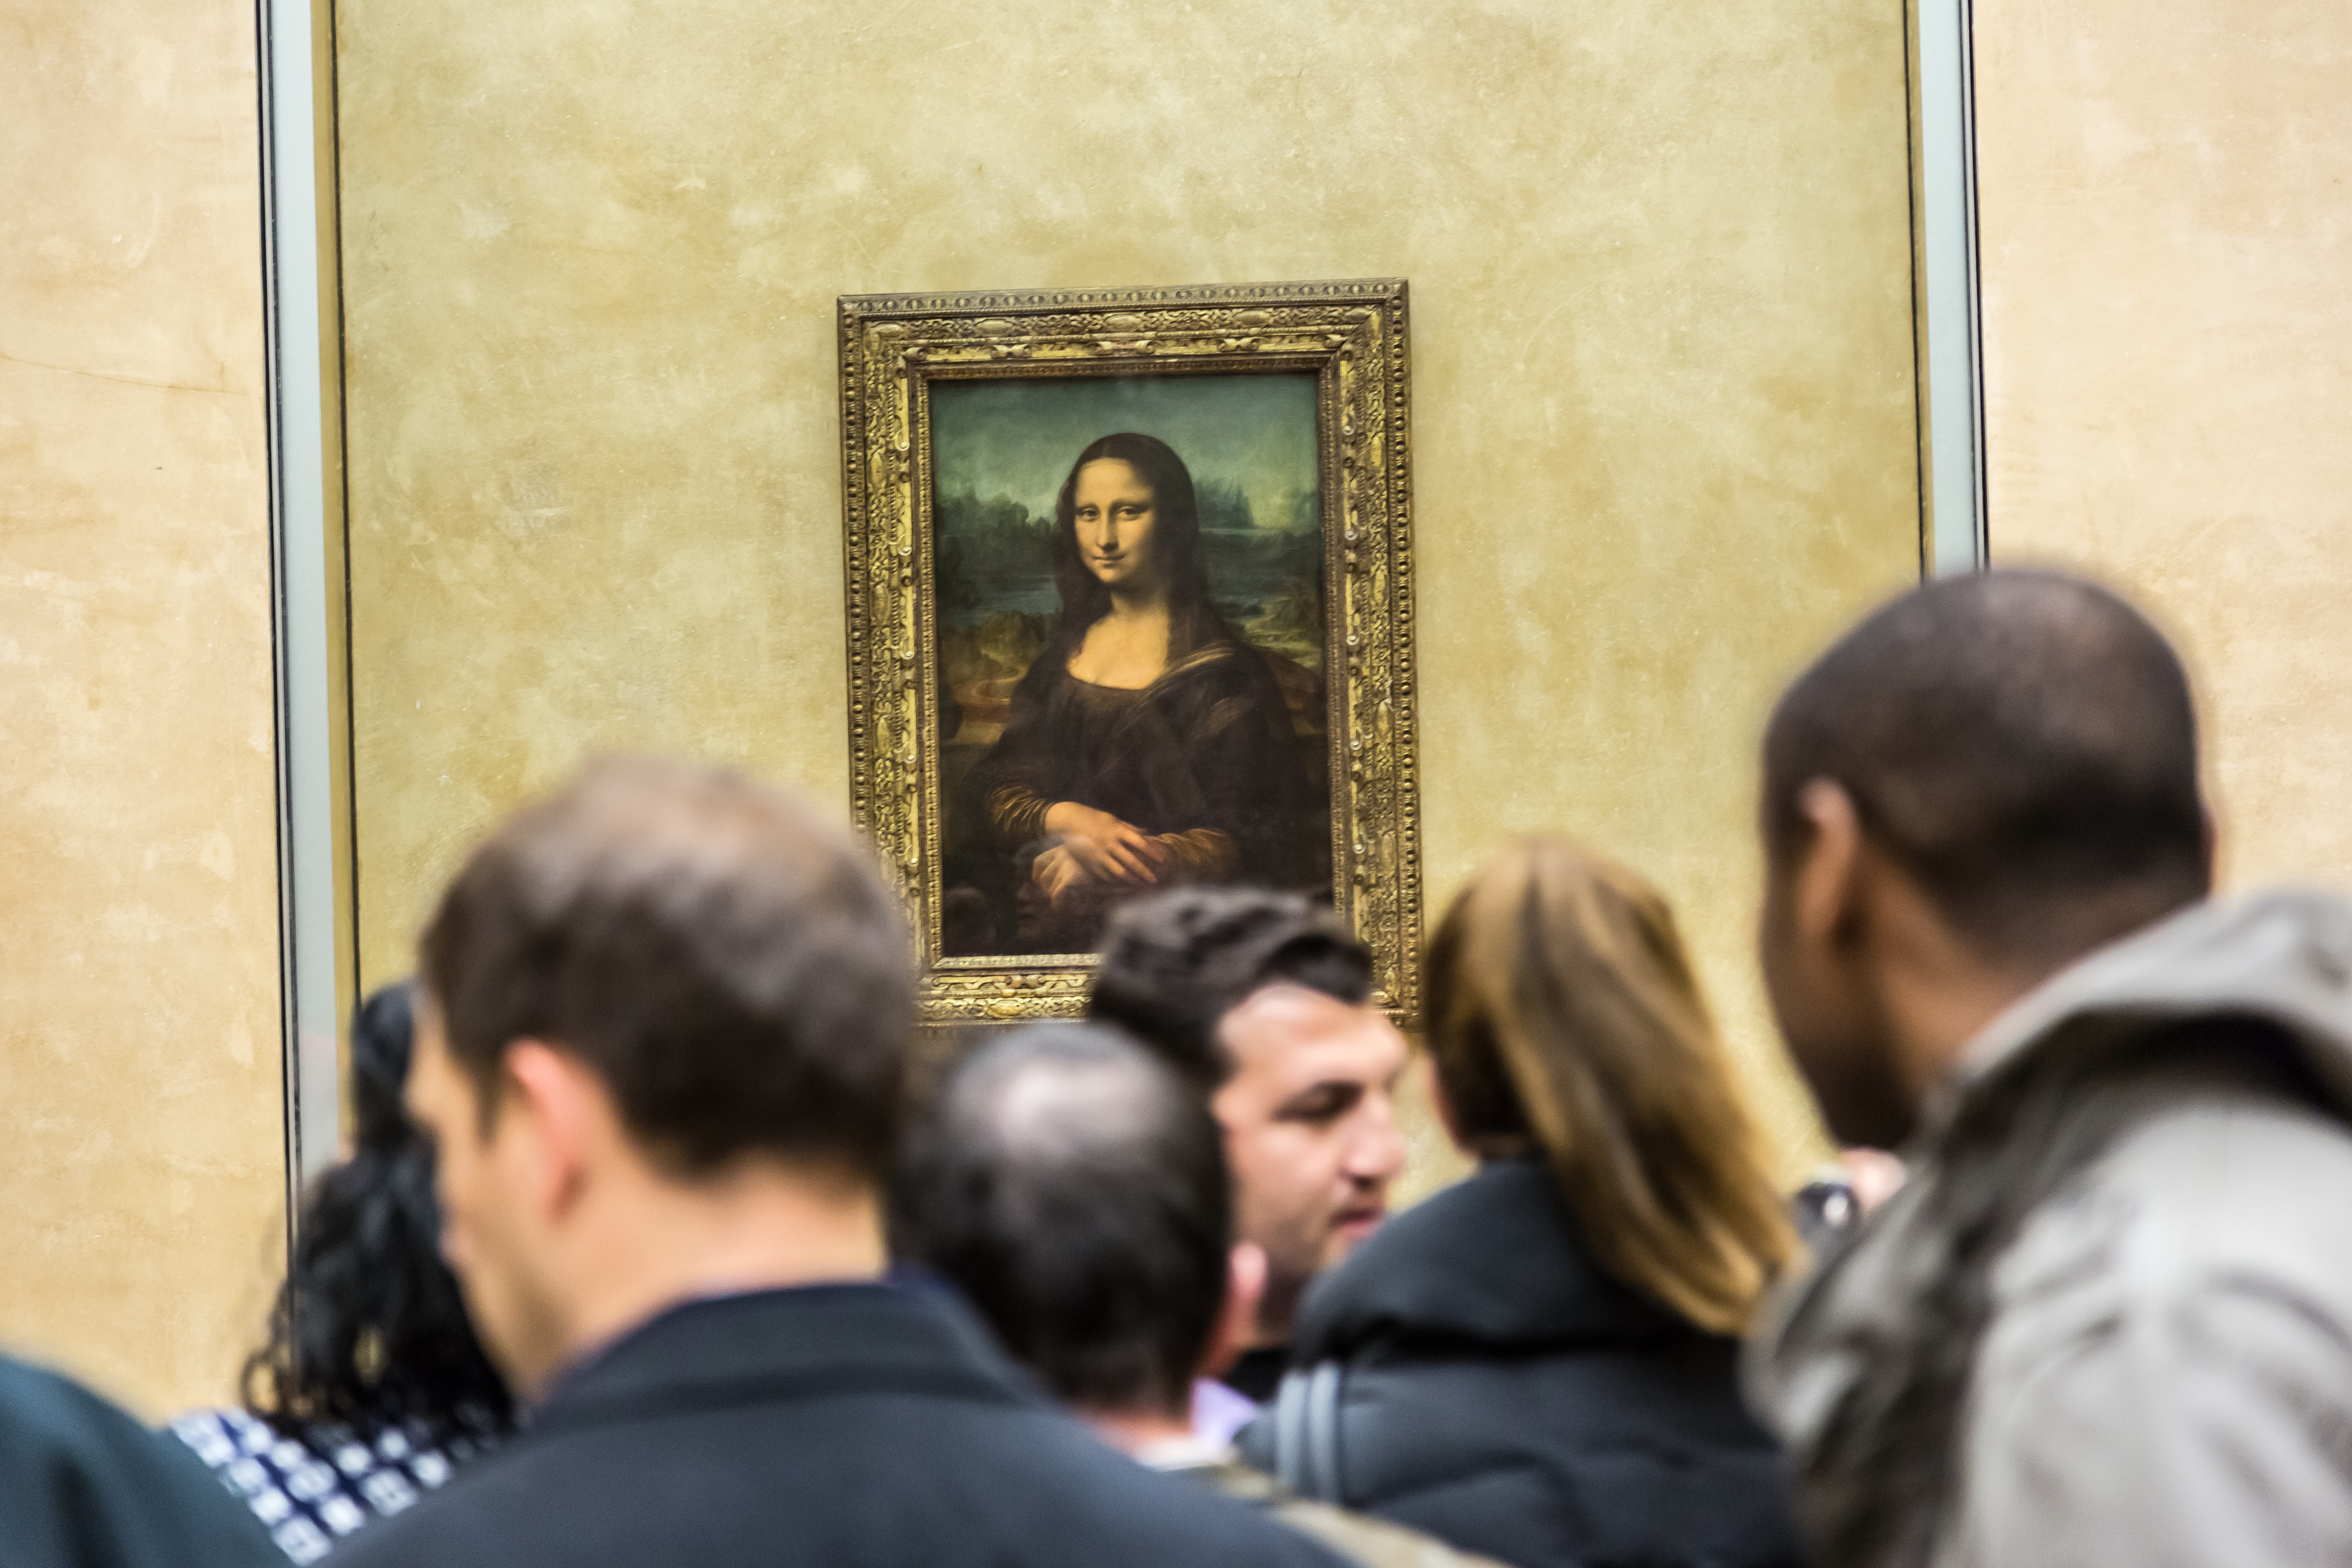 Siedem faktów o "Mona Lisie", o których nie mieliście pojęcia - Sztuka